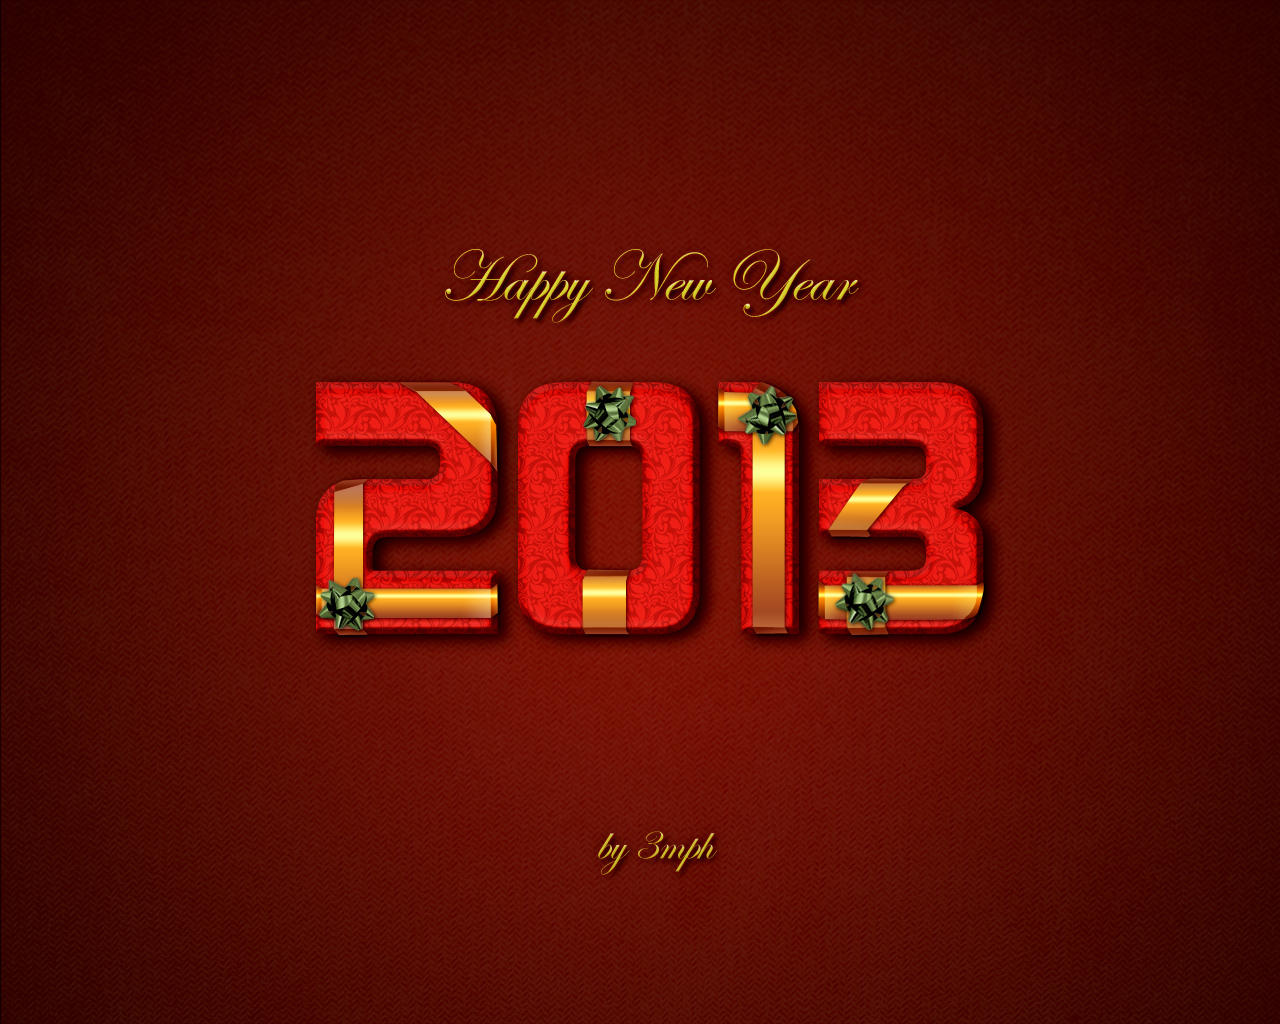 Día festivos Año Nuevo 2013